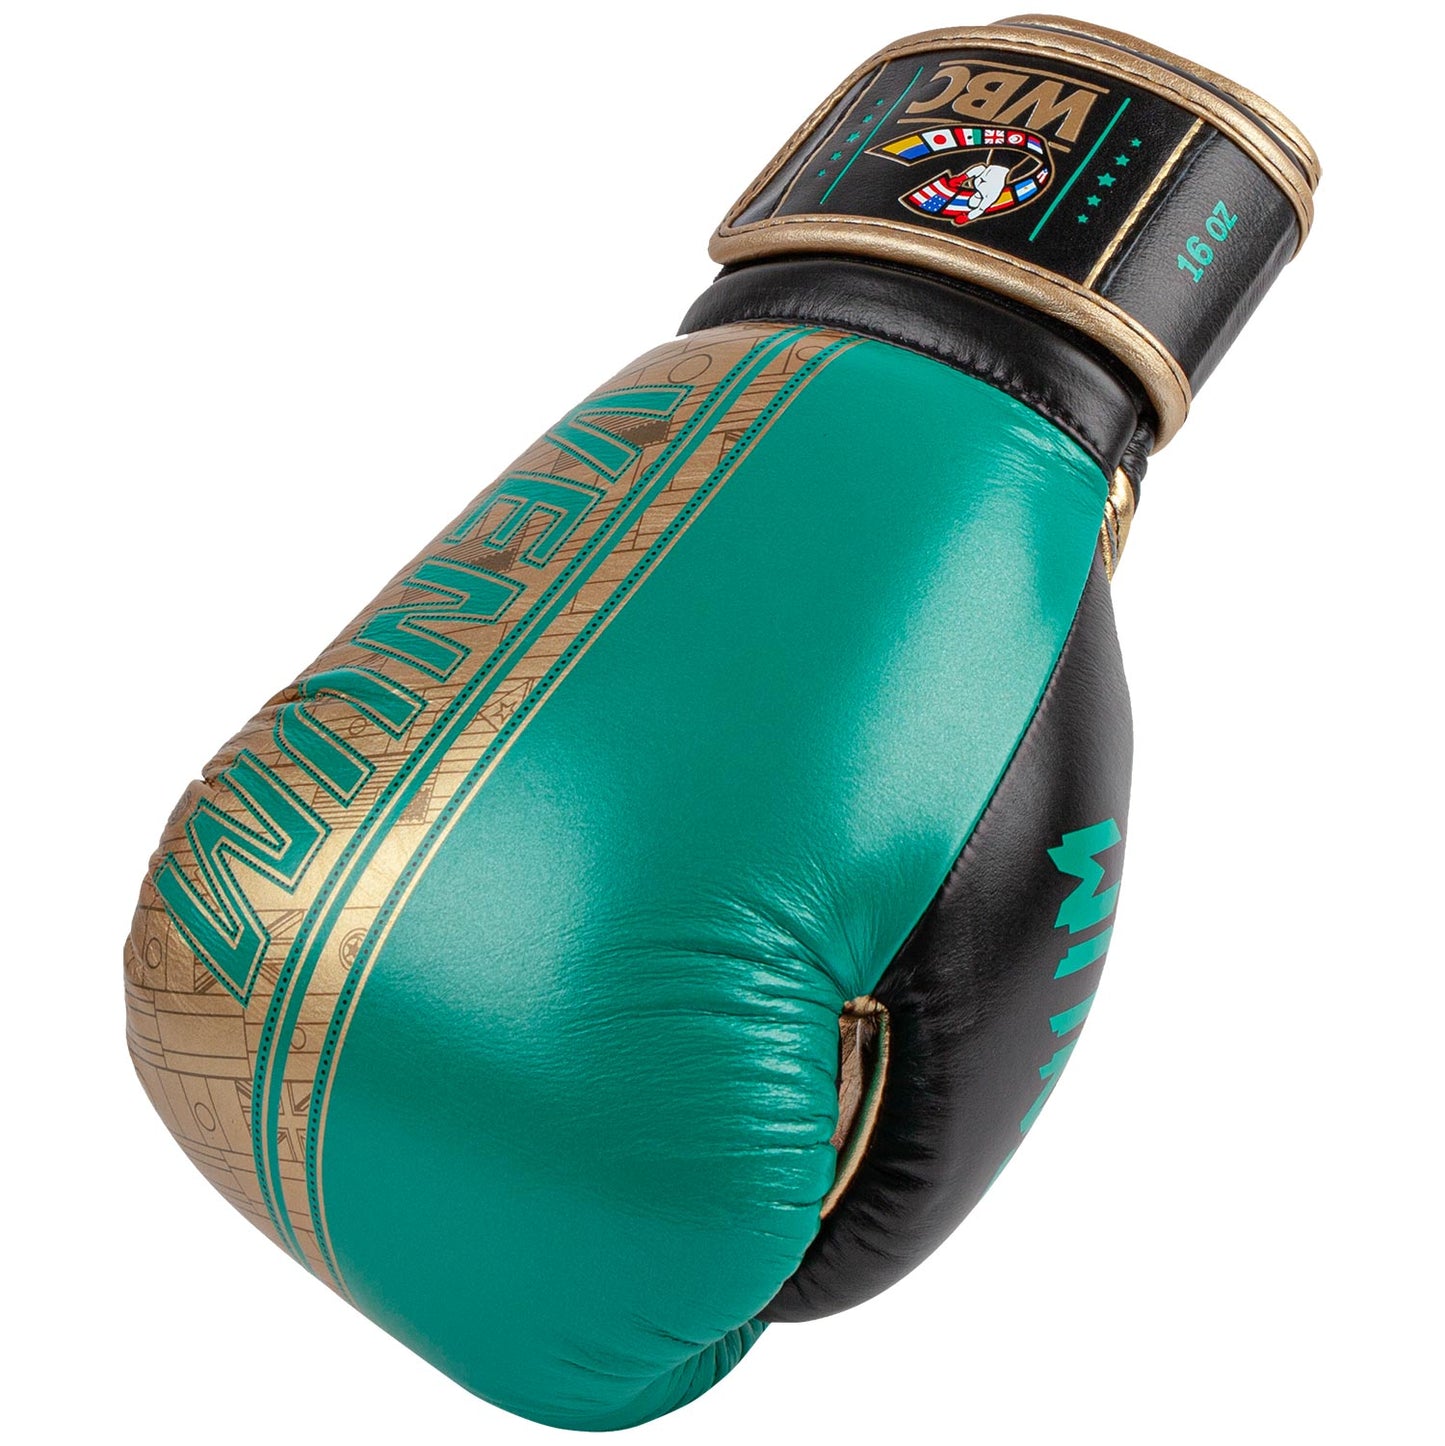 Venum Shield professionelle Boxhandschuhe - WBC limitierte Auflage - Klettverschluss - Metallicgrün/Gold